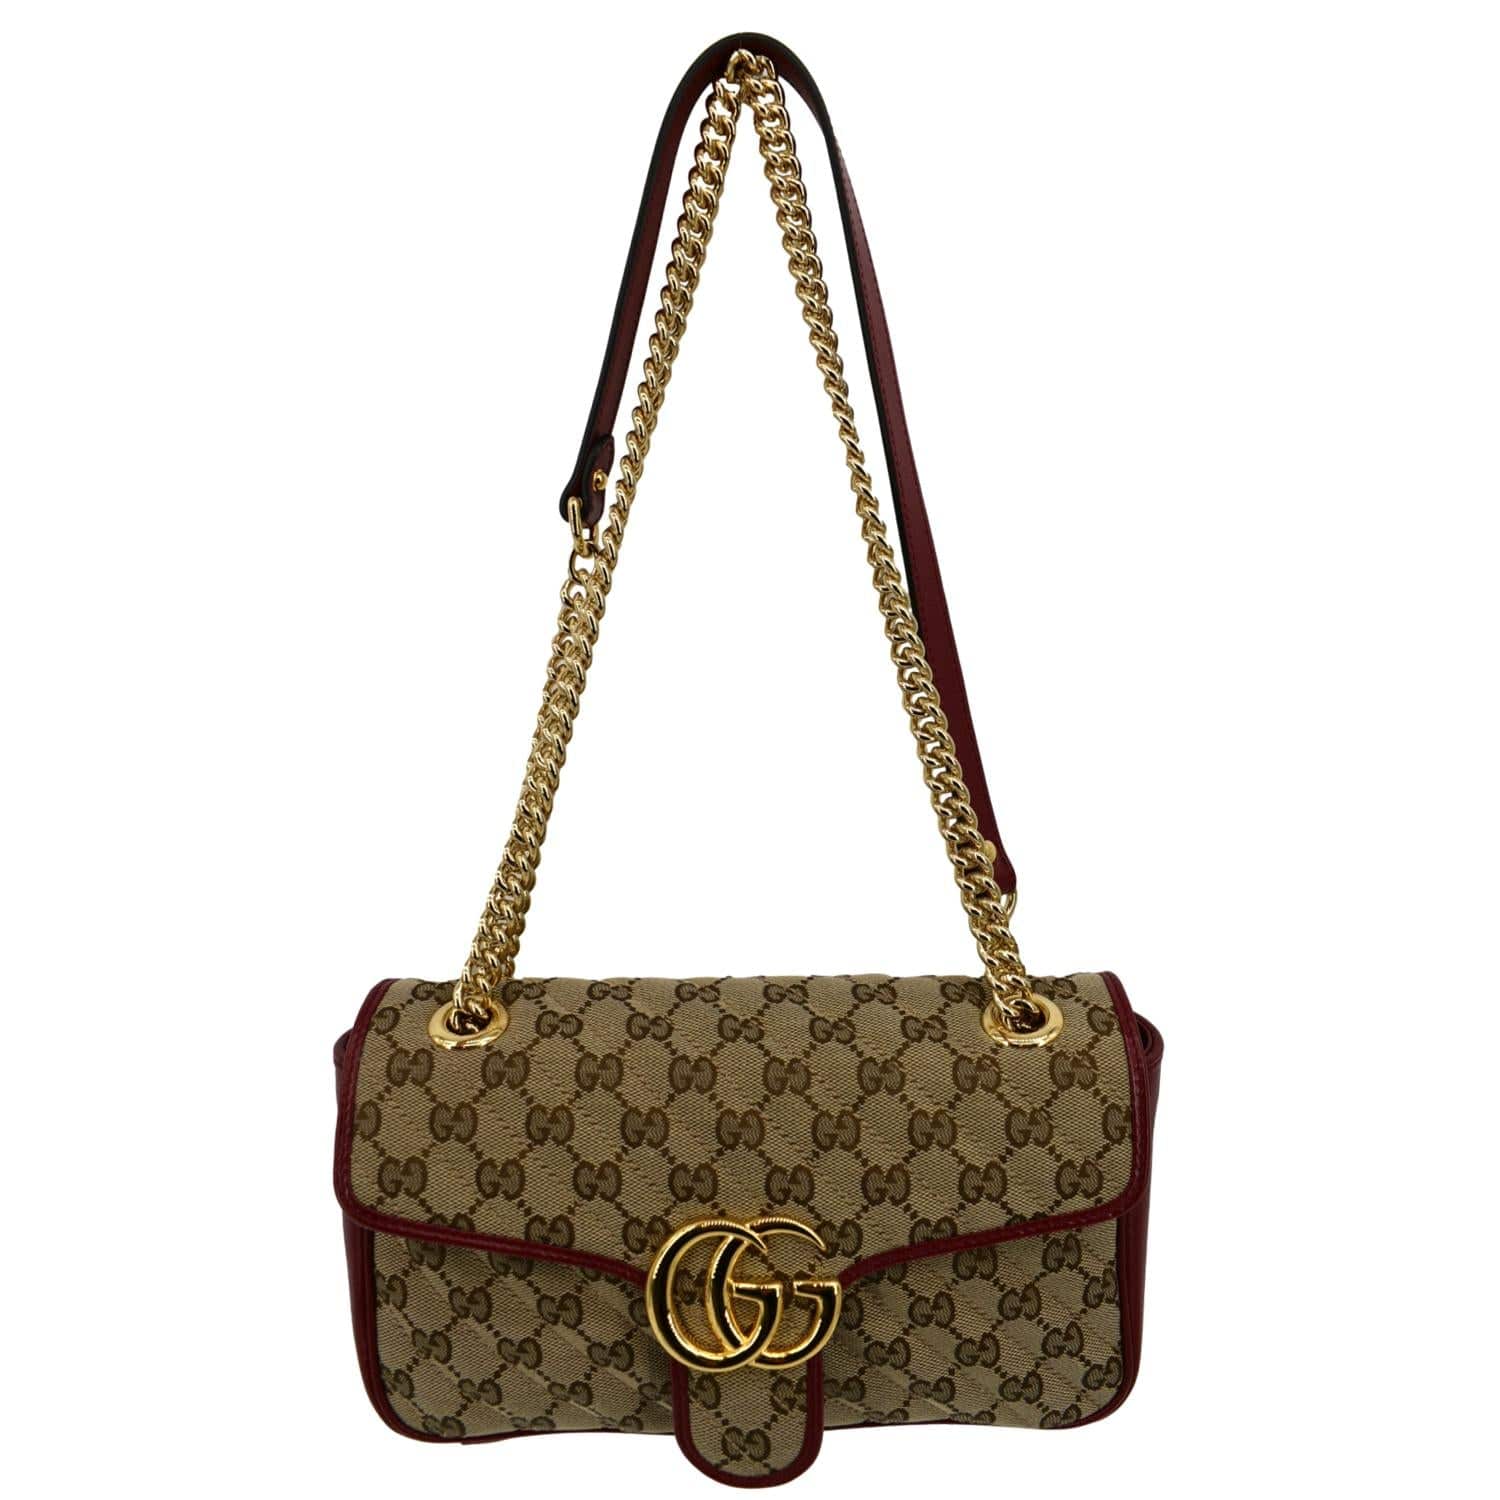 100% authentic Gucci handbag  Gucci handbags, Gucci, Handbag